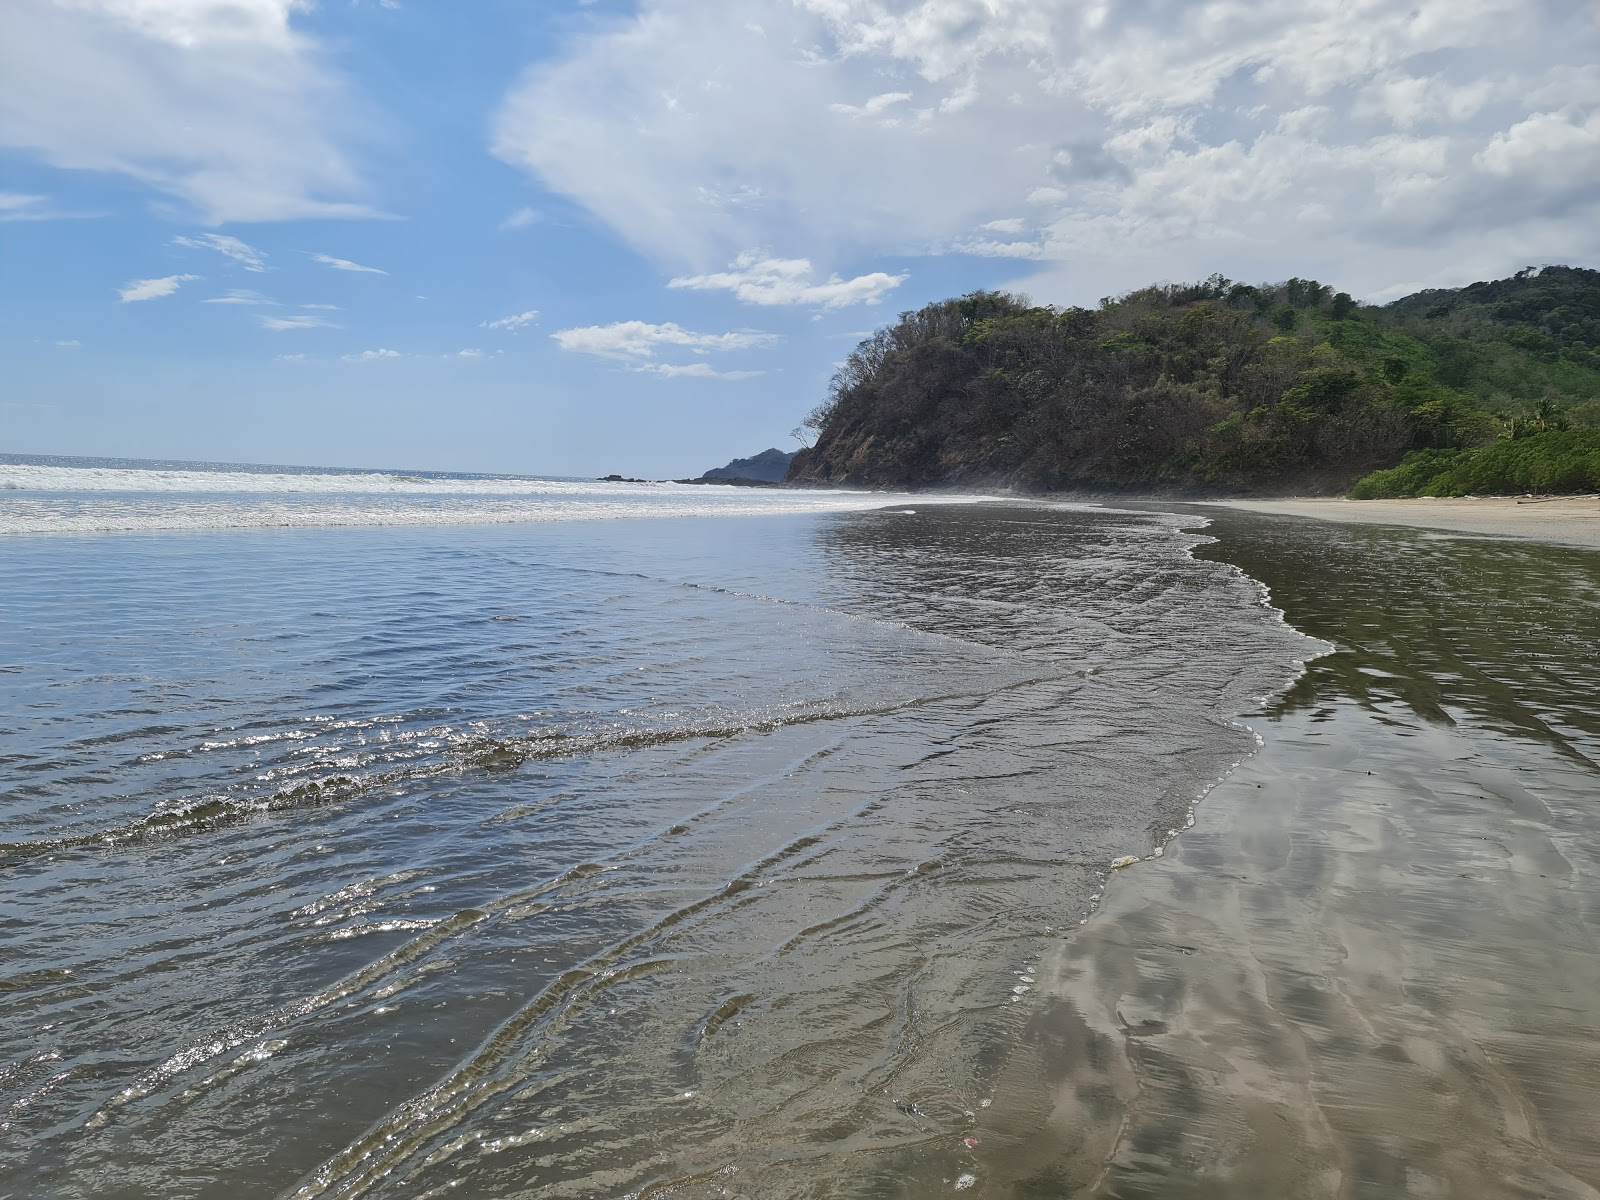 Zdjęcie Corozalito Beach - popularne miejsce wśród znawców relaksu